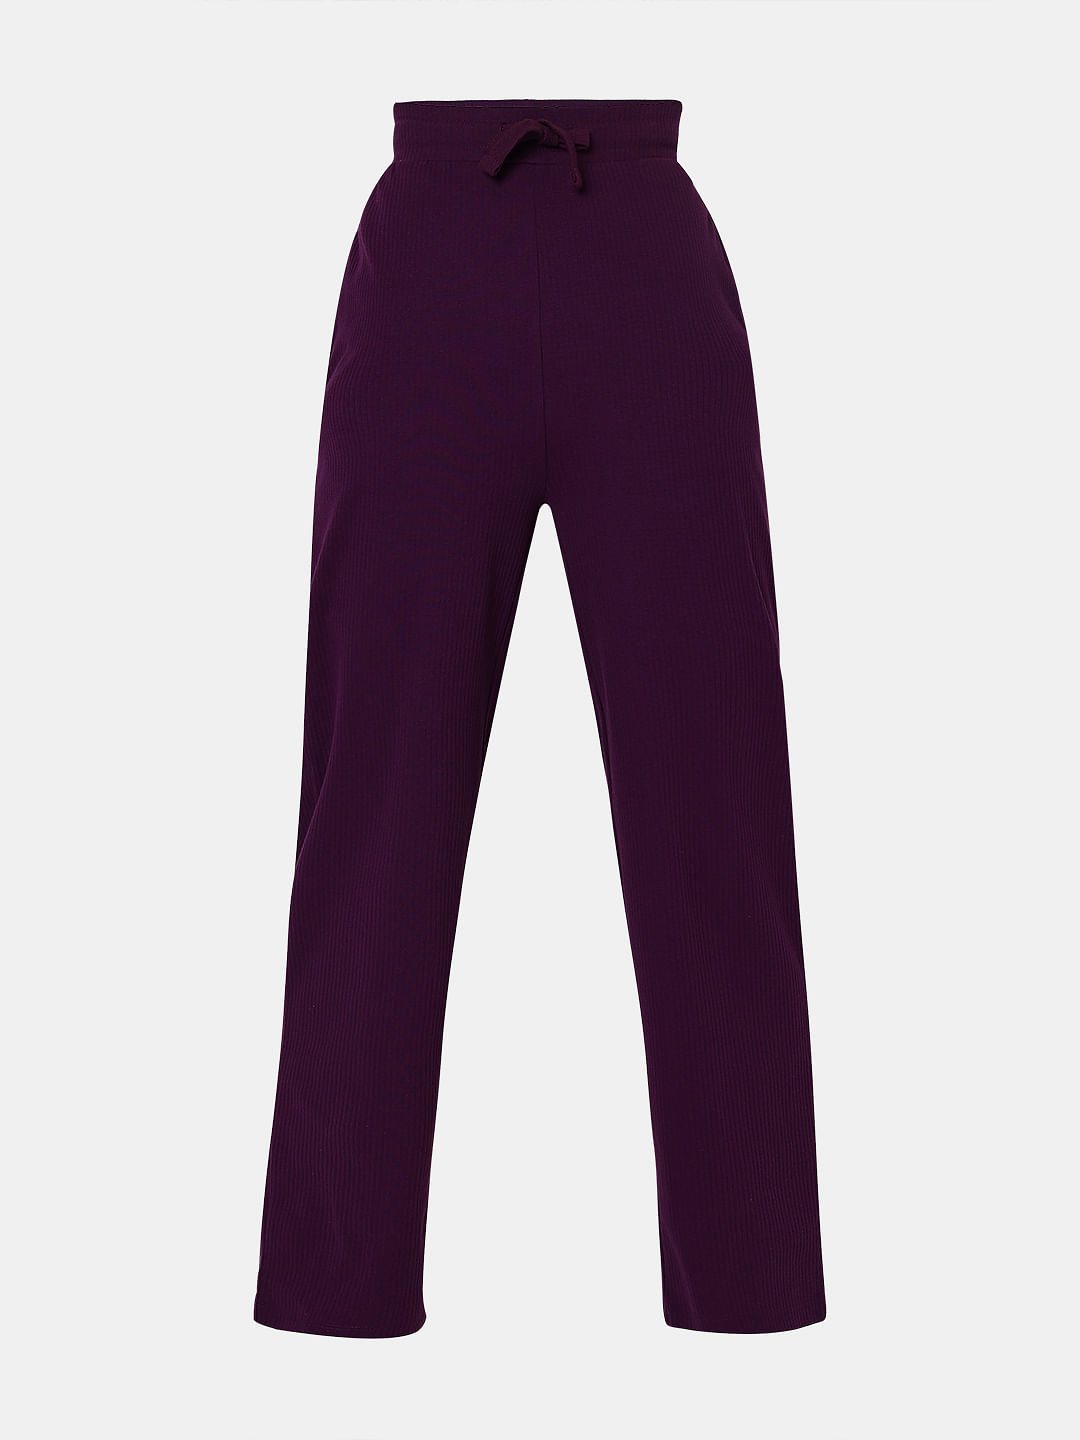 purple suits for women - Corporette.com